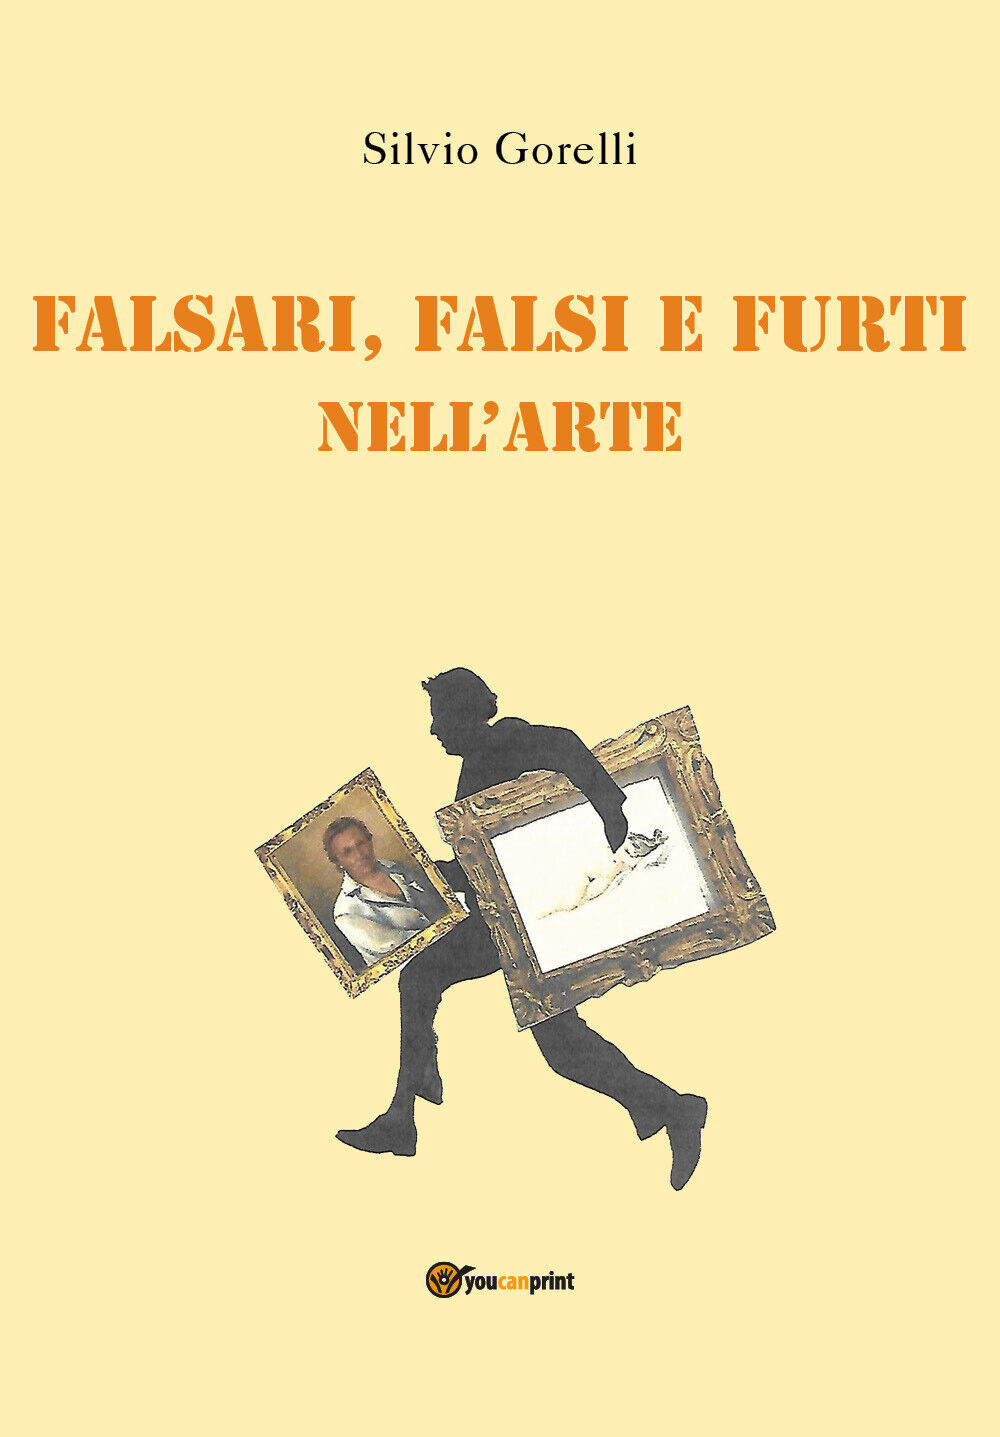 Falsi, falsari e furti nelL'arte di Silvio Gorelli,  2021,  Youcanprint